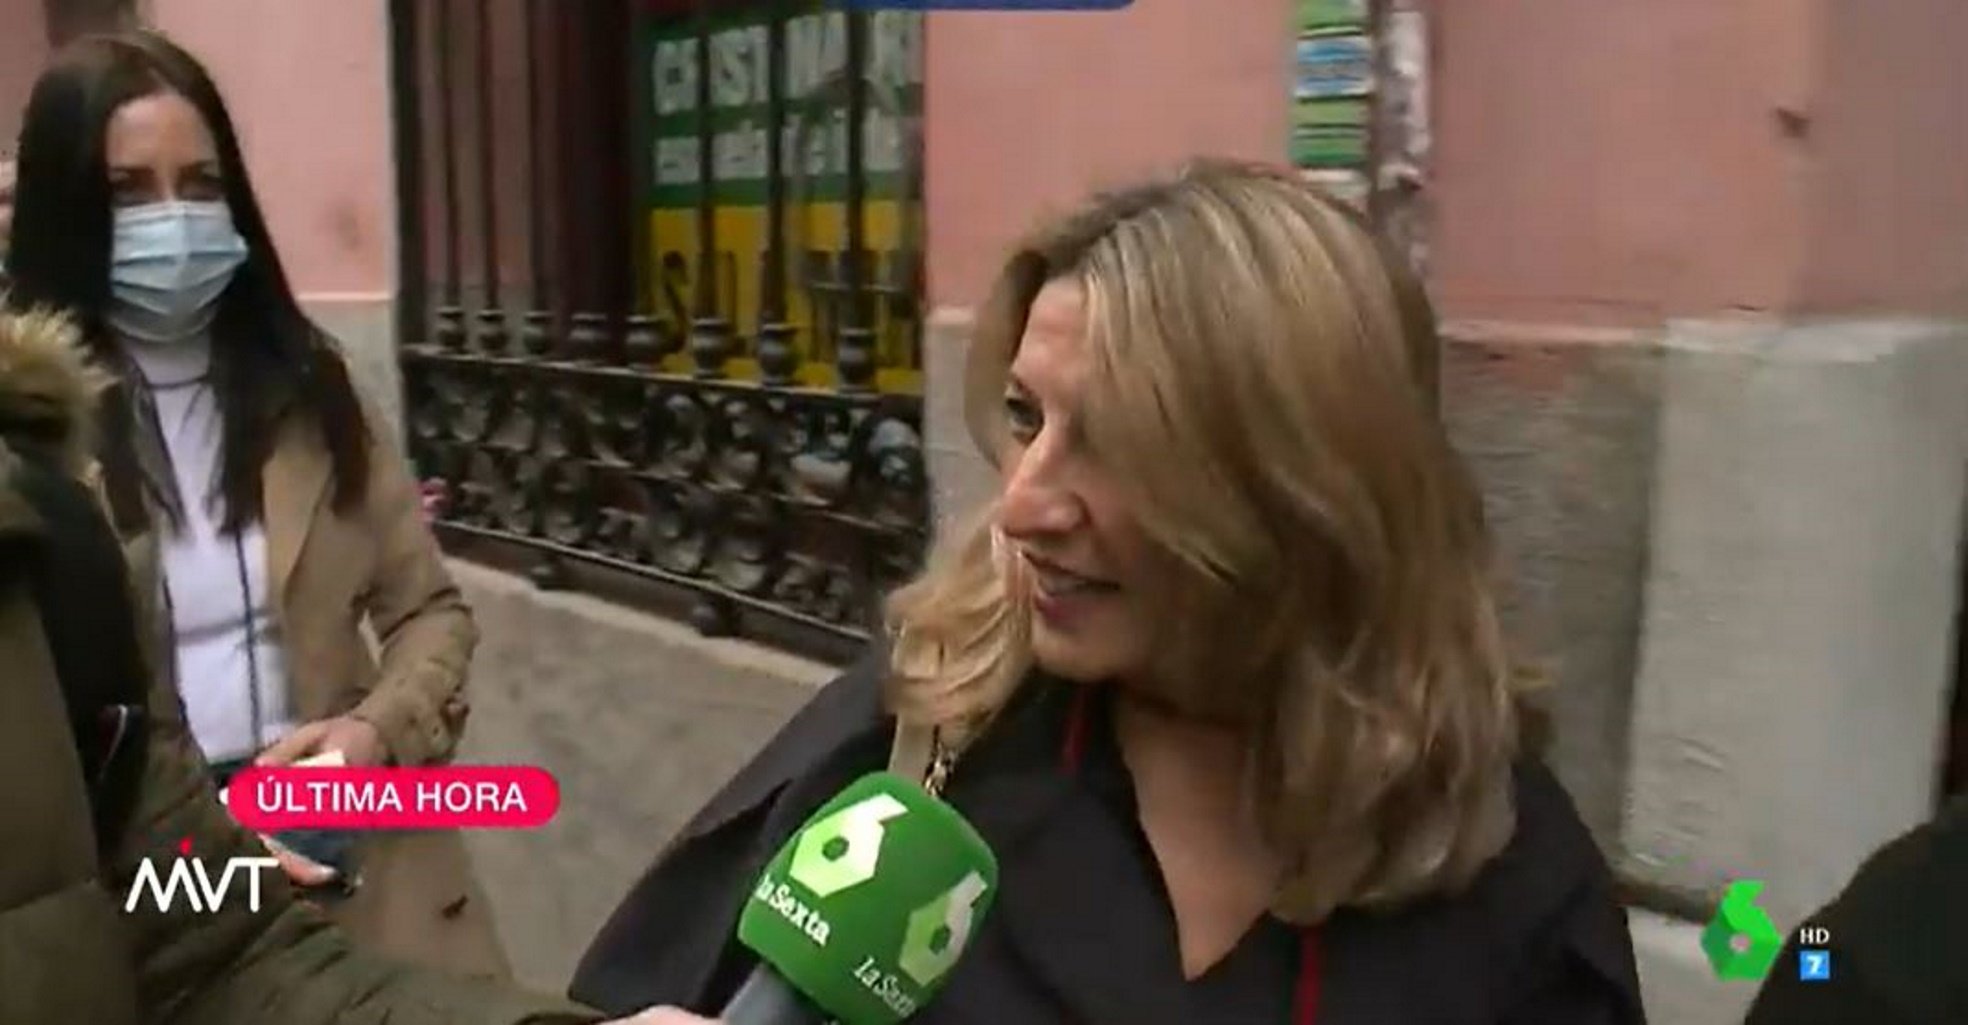 Choque entre Pablo Iglesias y Yolanda Díaz, que replica: "Yo me dedico a trabajar"